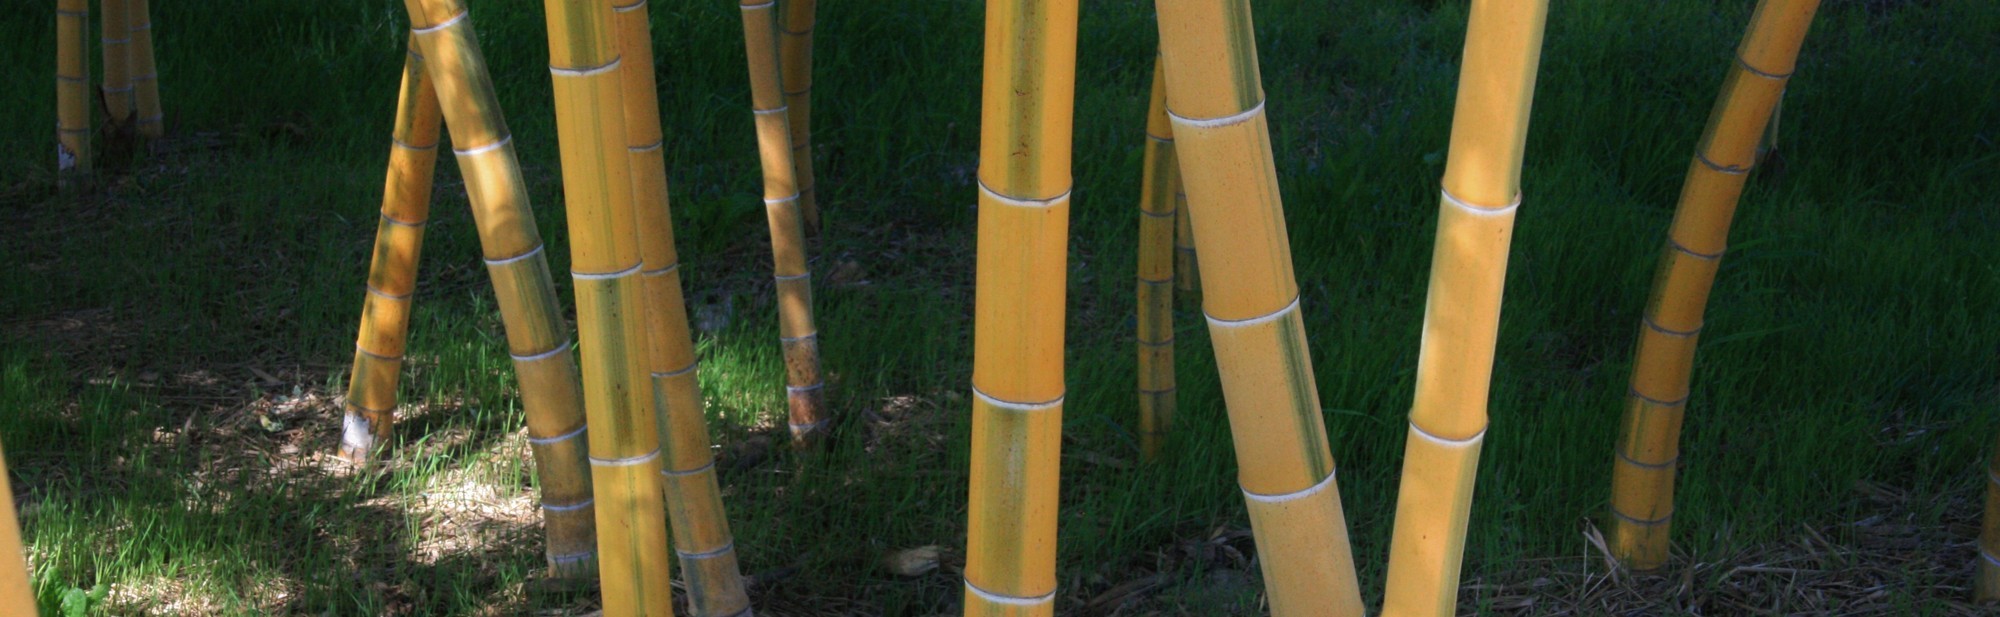 Bambous chaumes colorés